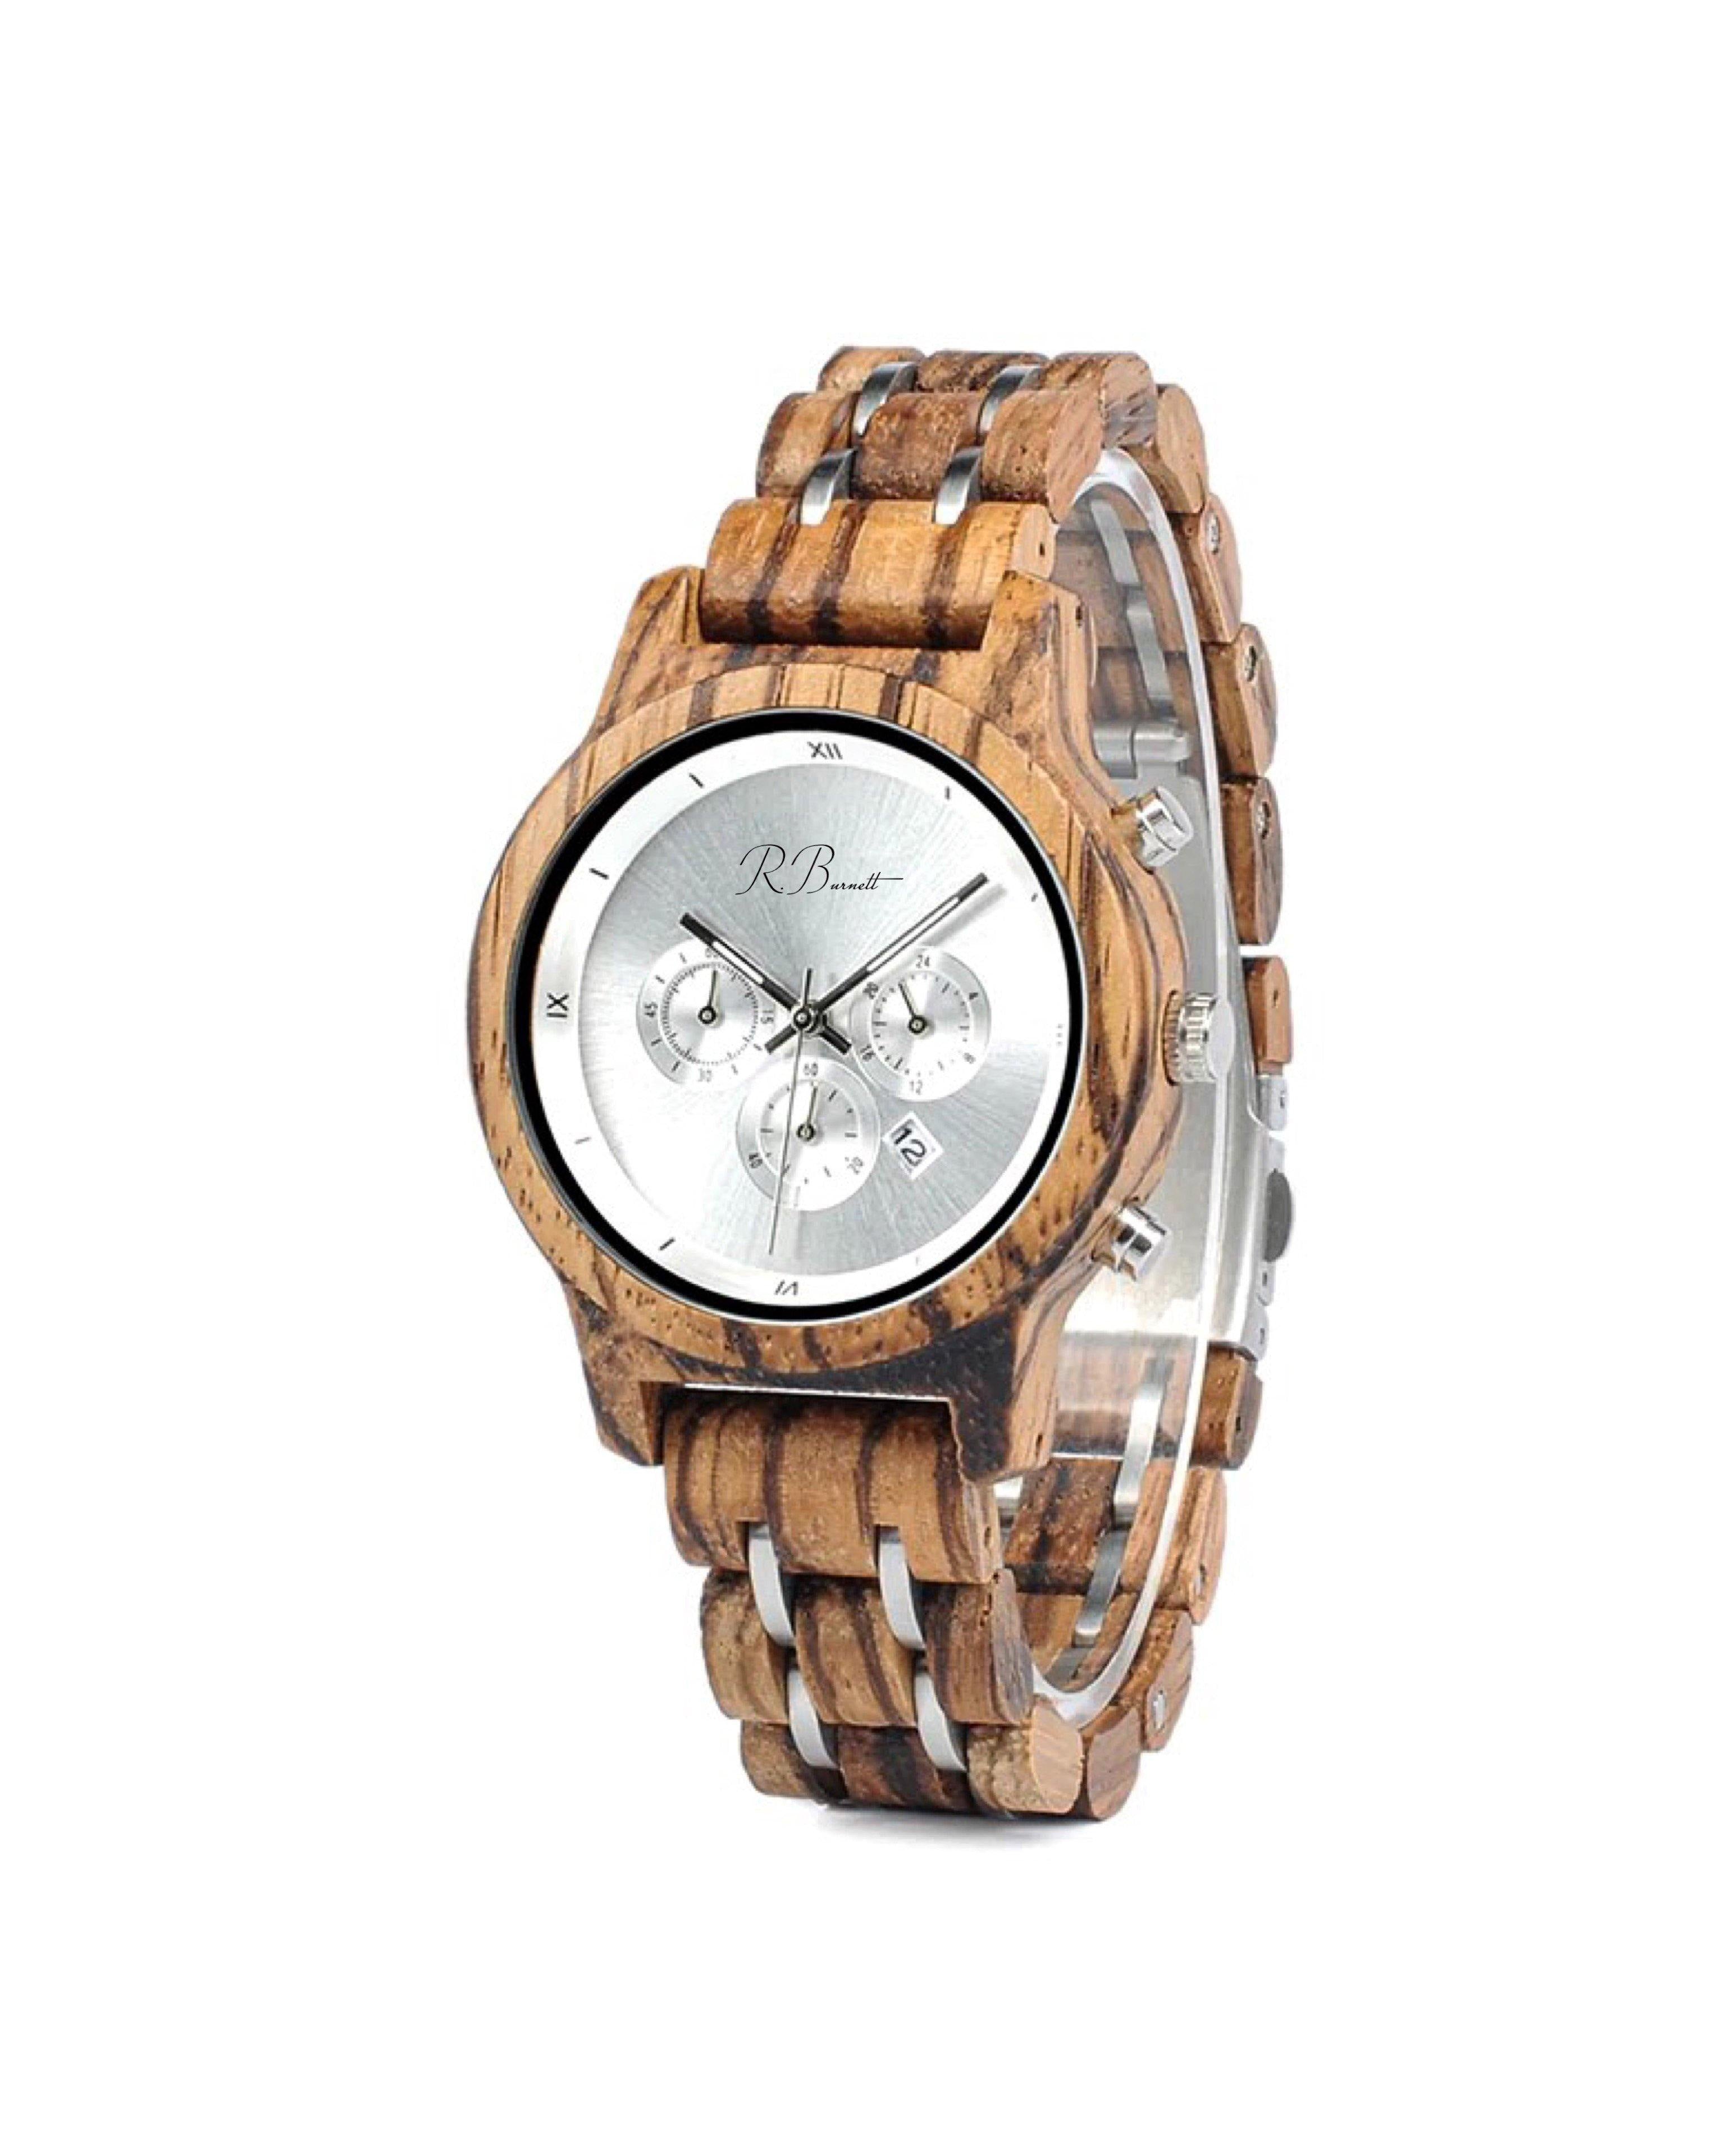 Argento - Wooden Watch - R. Burnett Brand